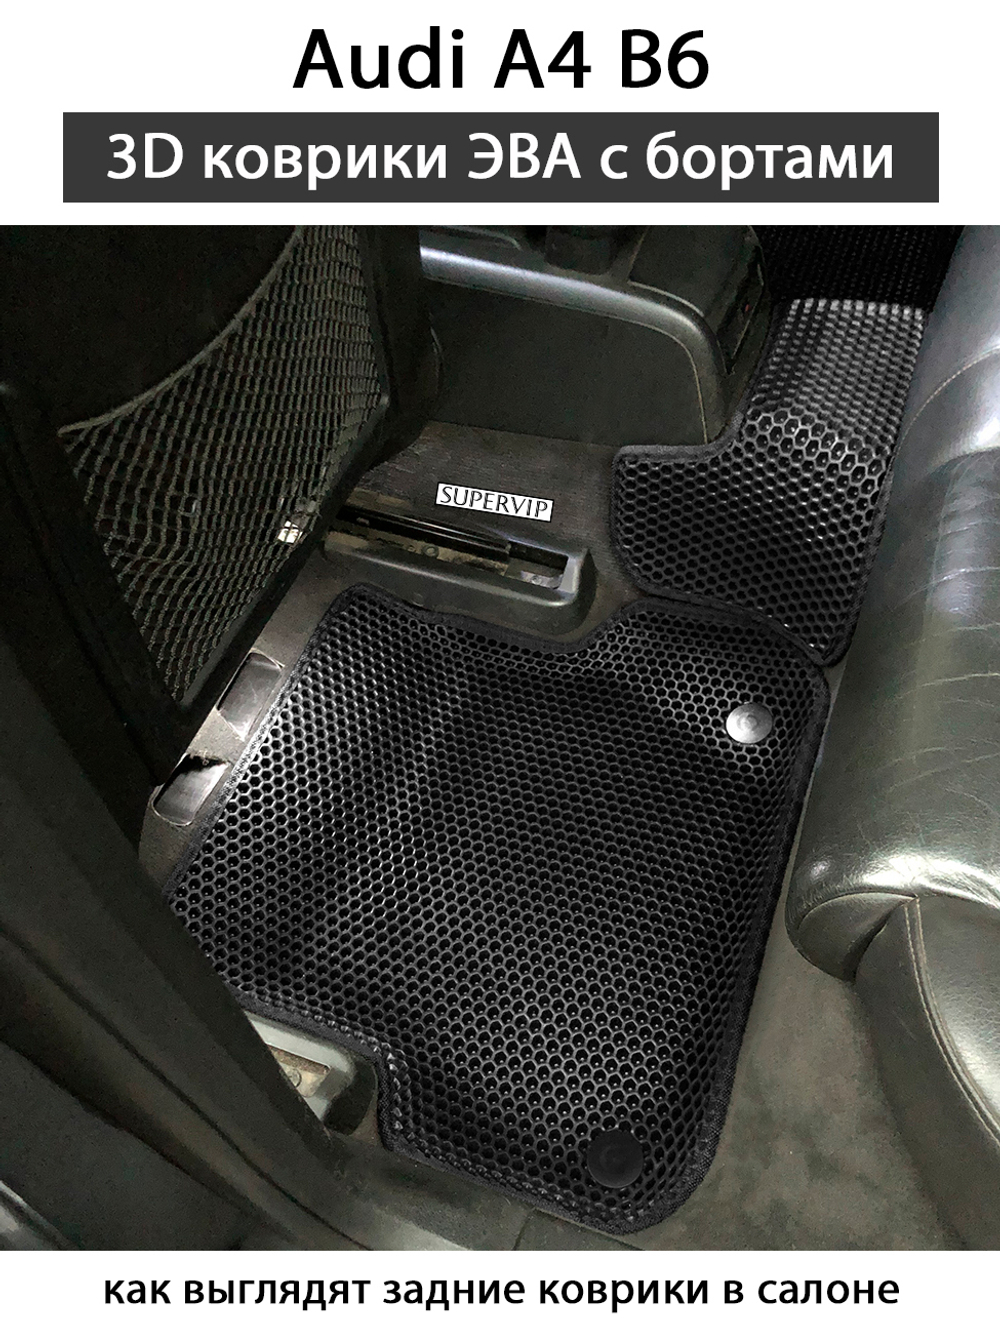 комплект эва ковриков в салон авто Audi A4 (B6) 00-06г. от supervip